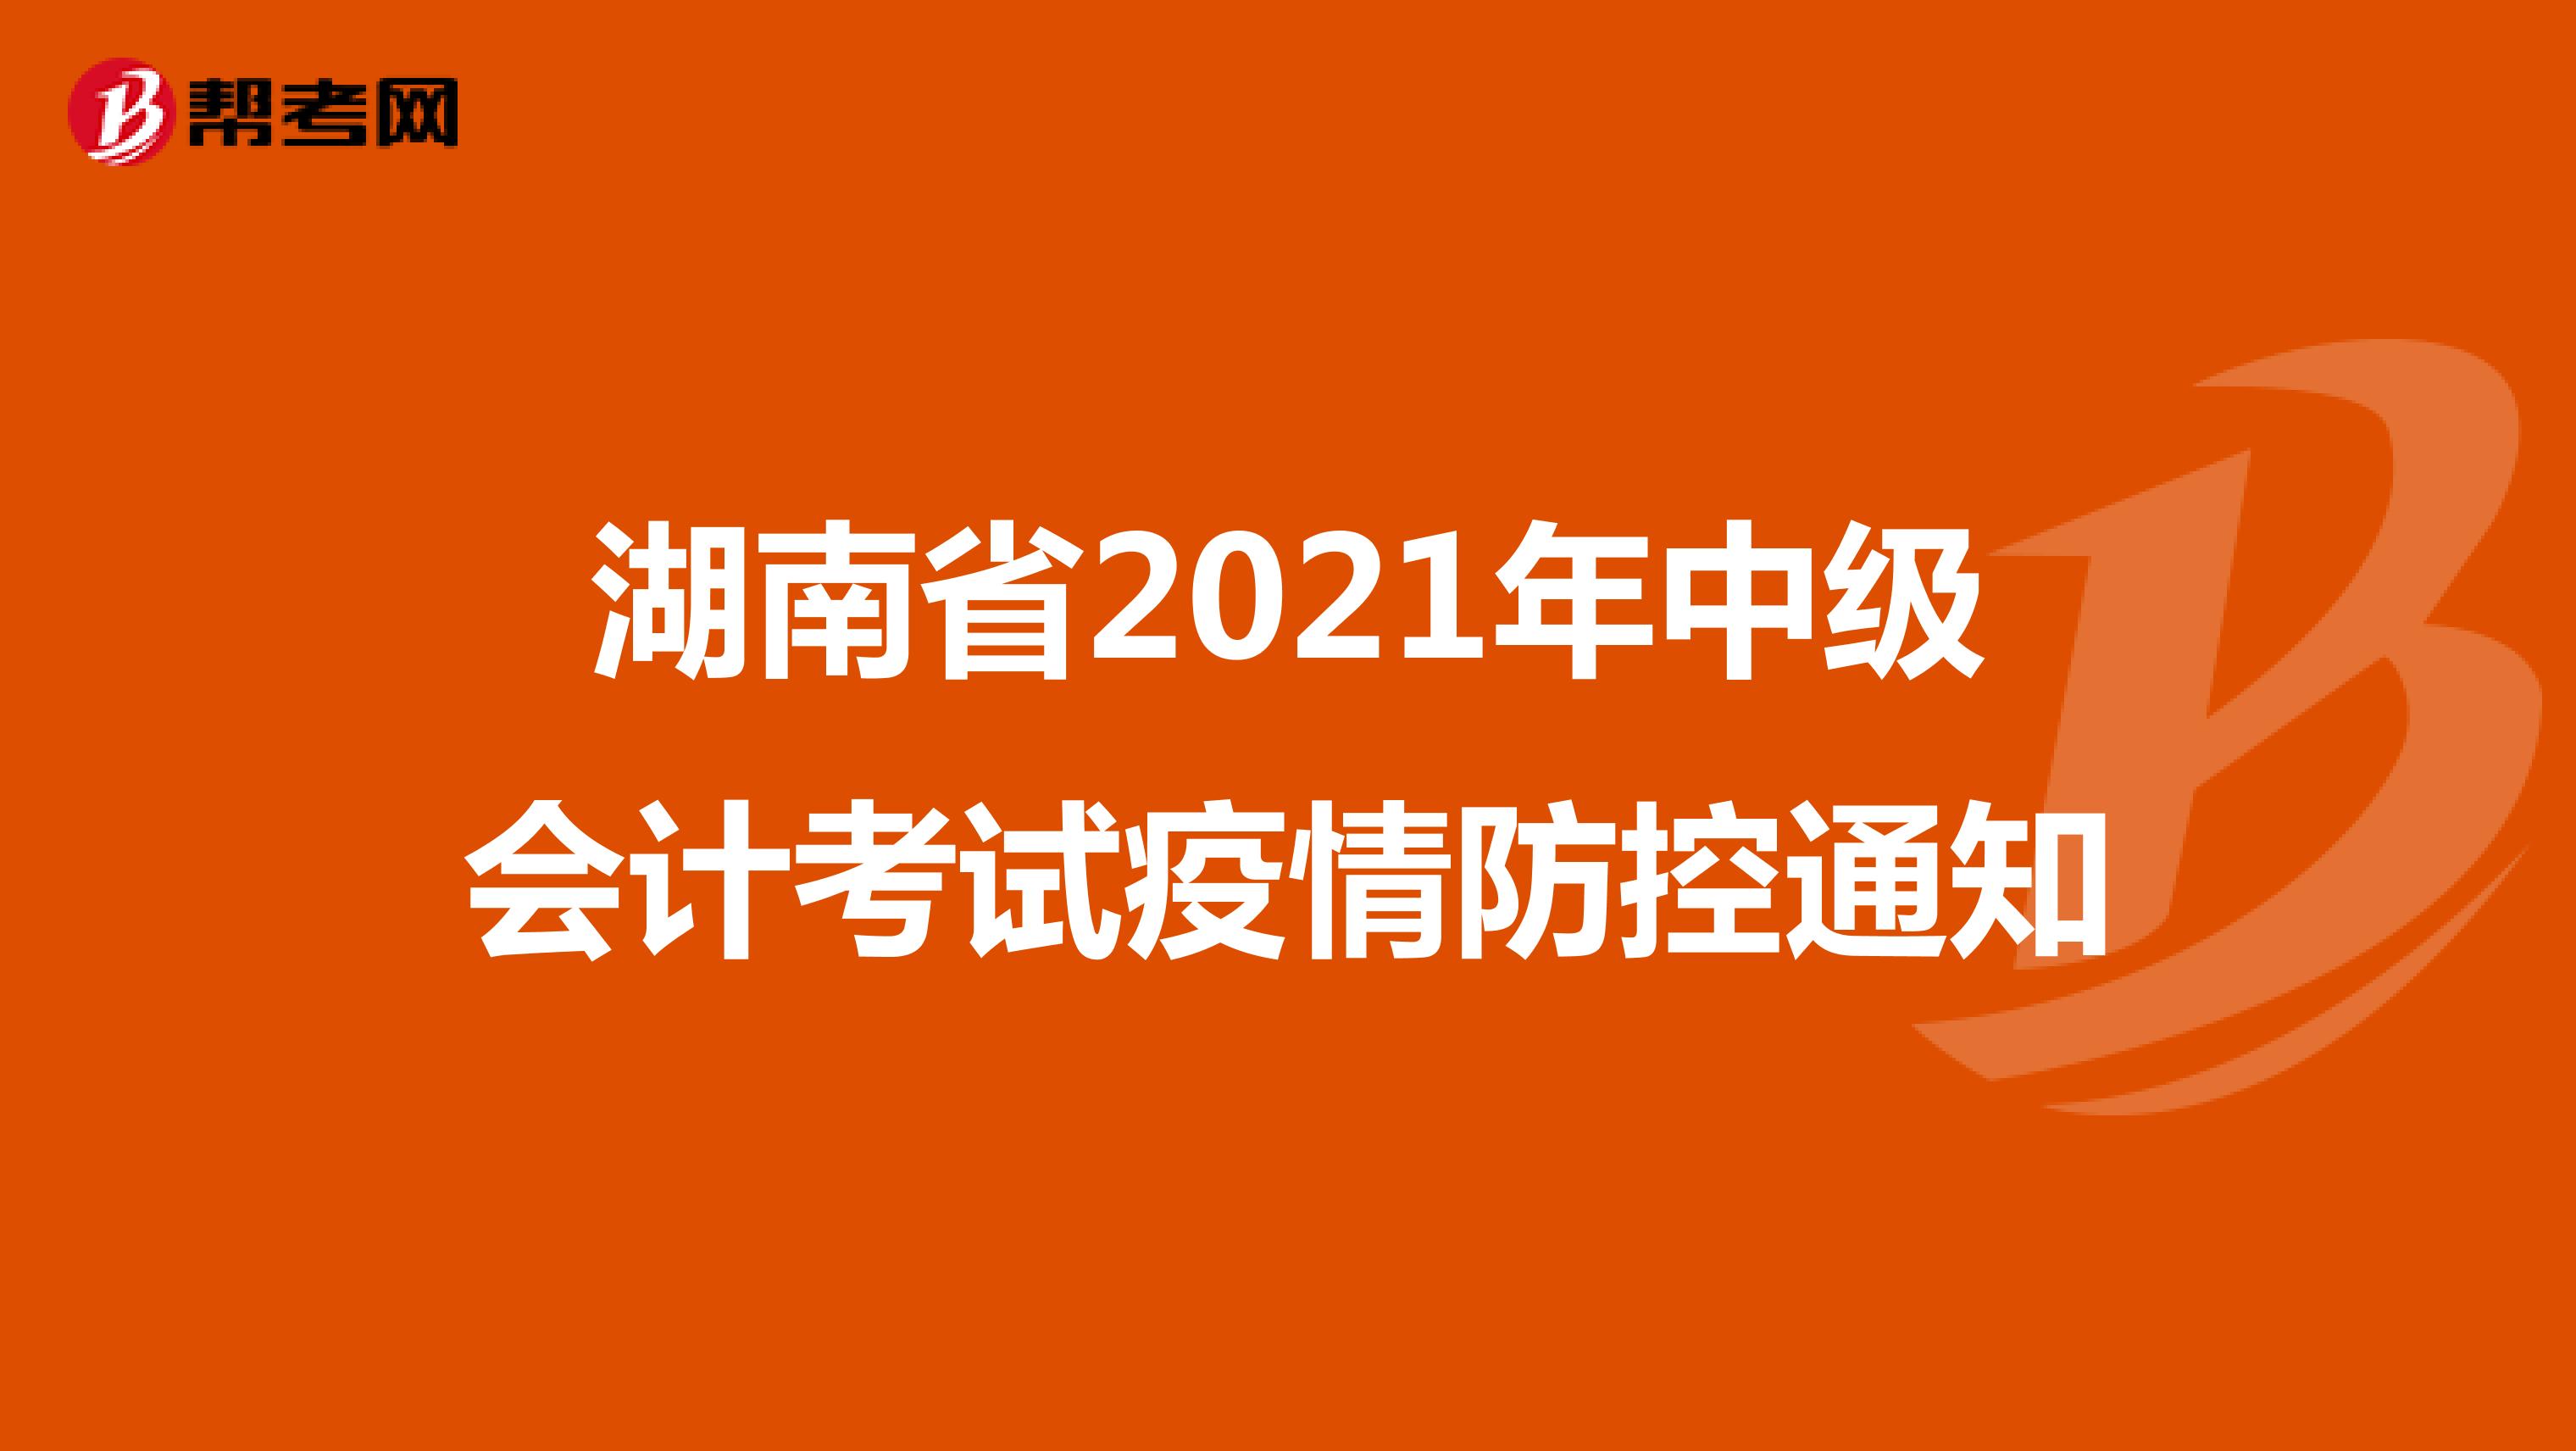 湖南省2021年中级会计考试疫情防控通知